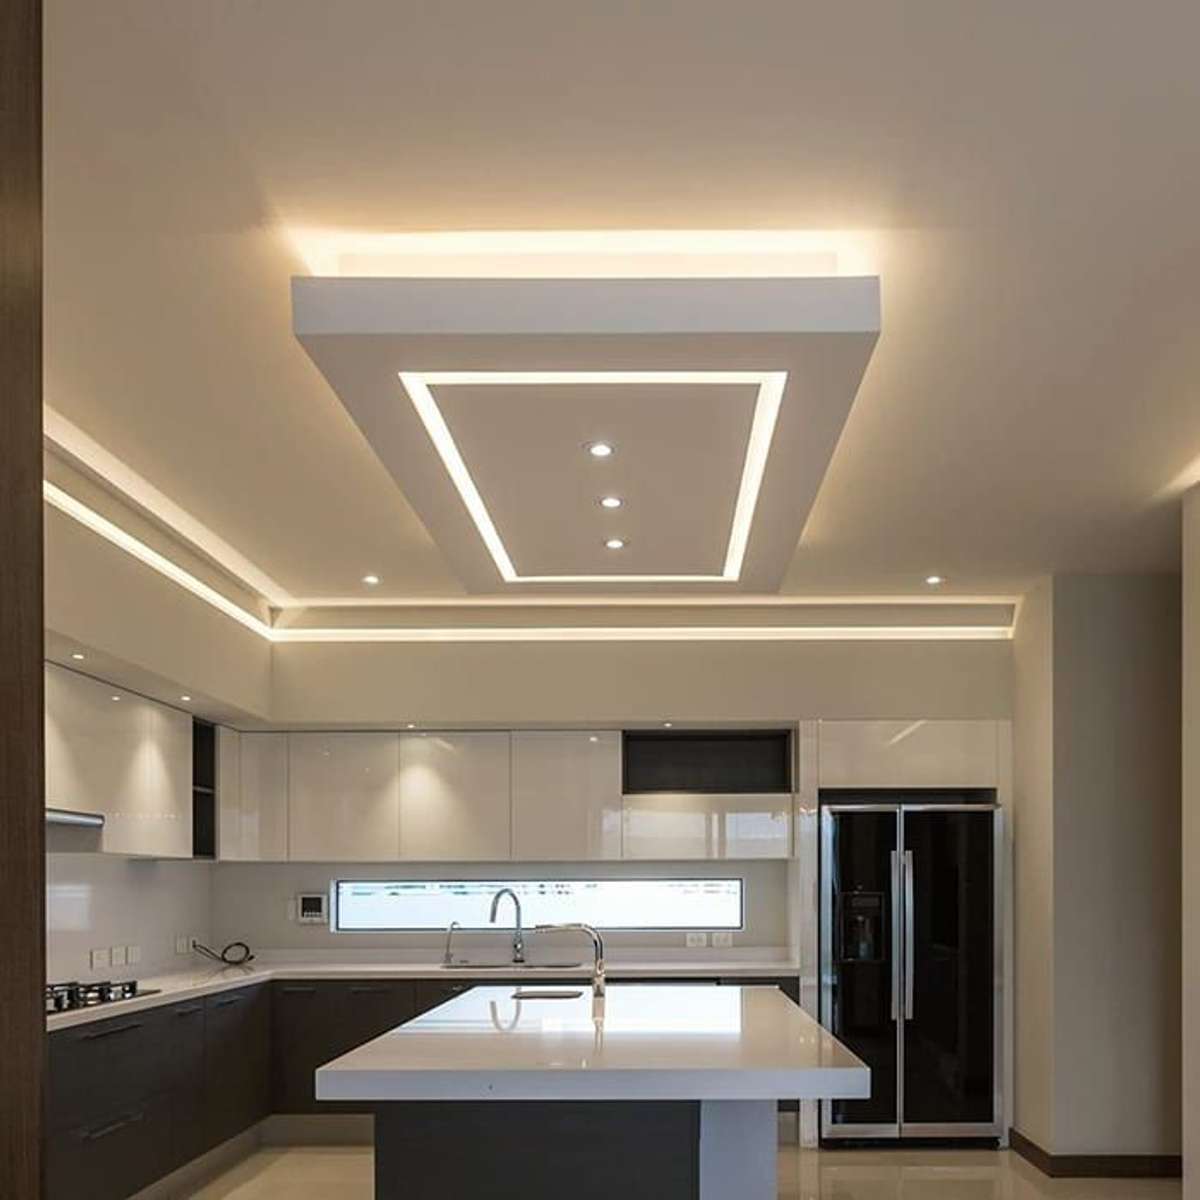 Ceiling, Kitchen, Lighting, Storage Designs by Interior Designer shahul AM, Thrissur | Kolo